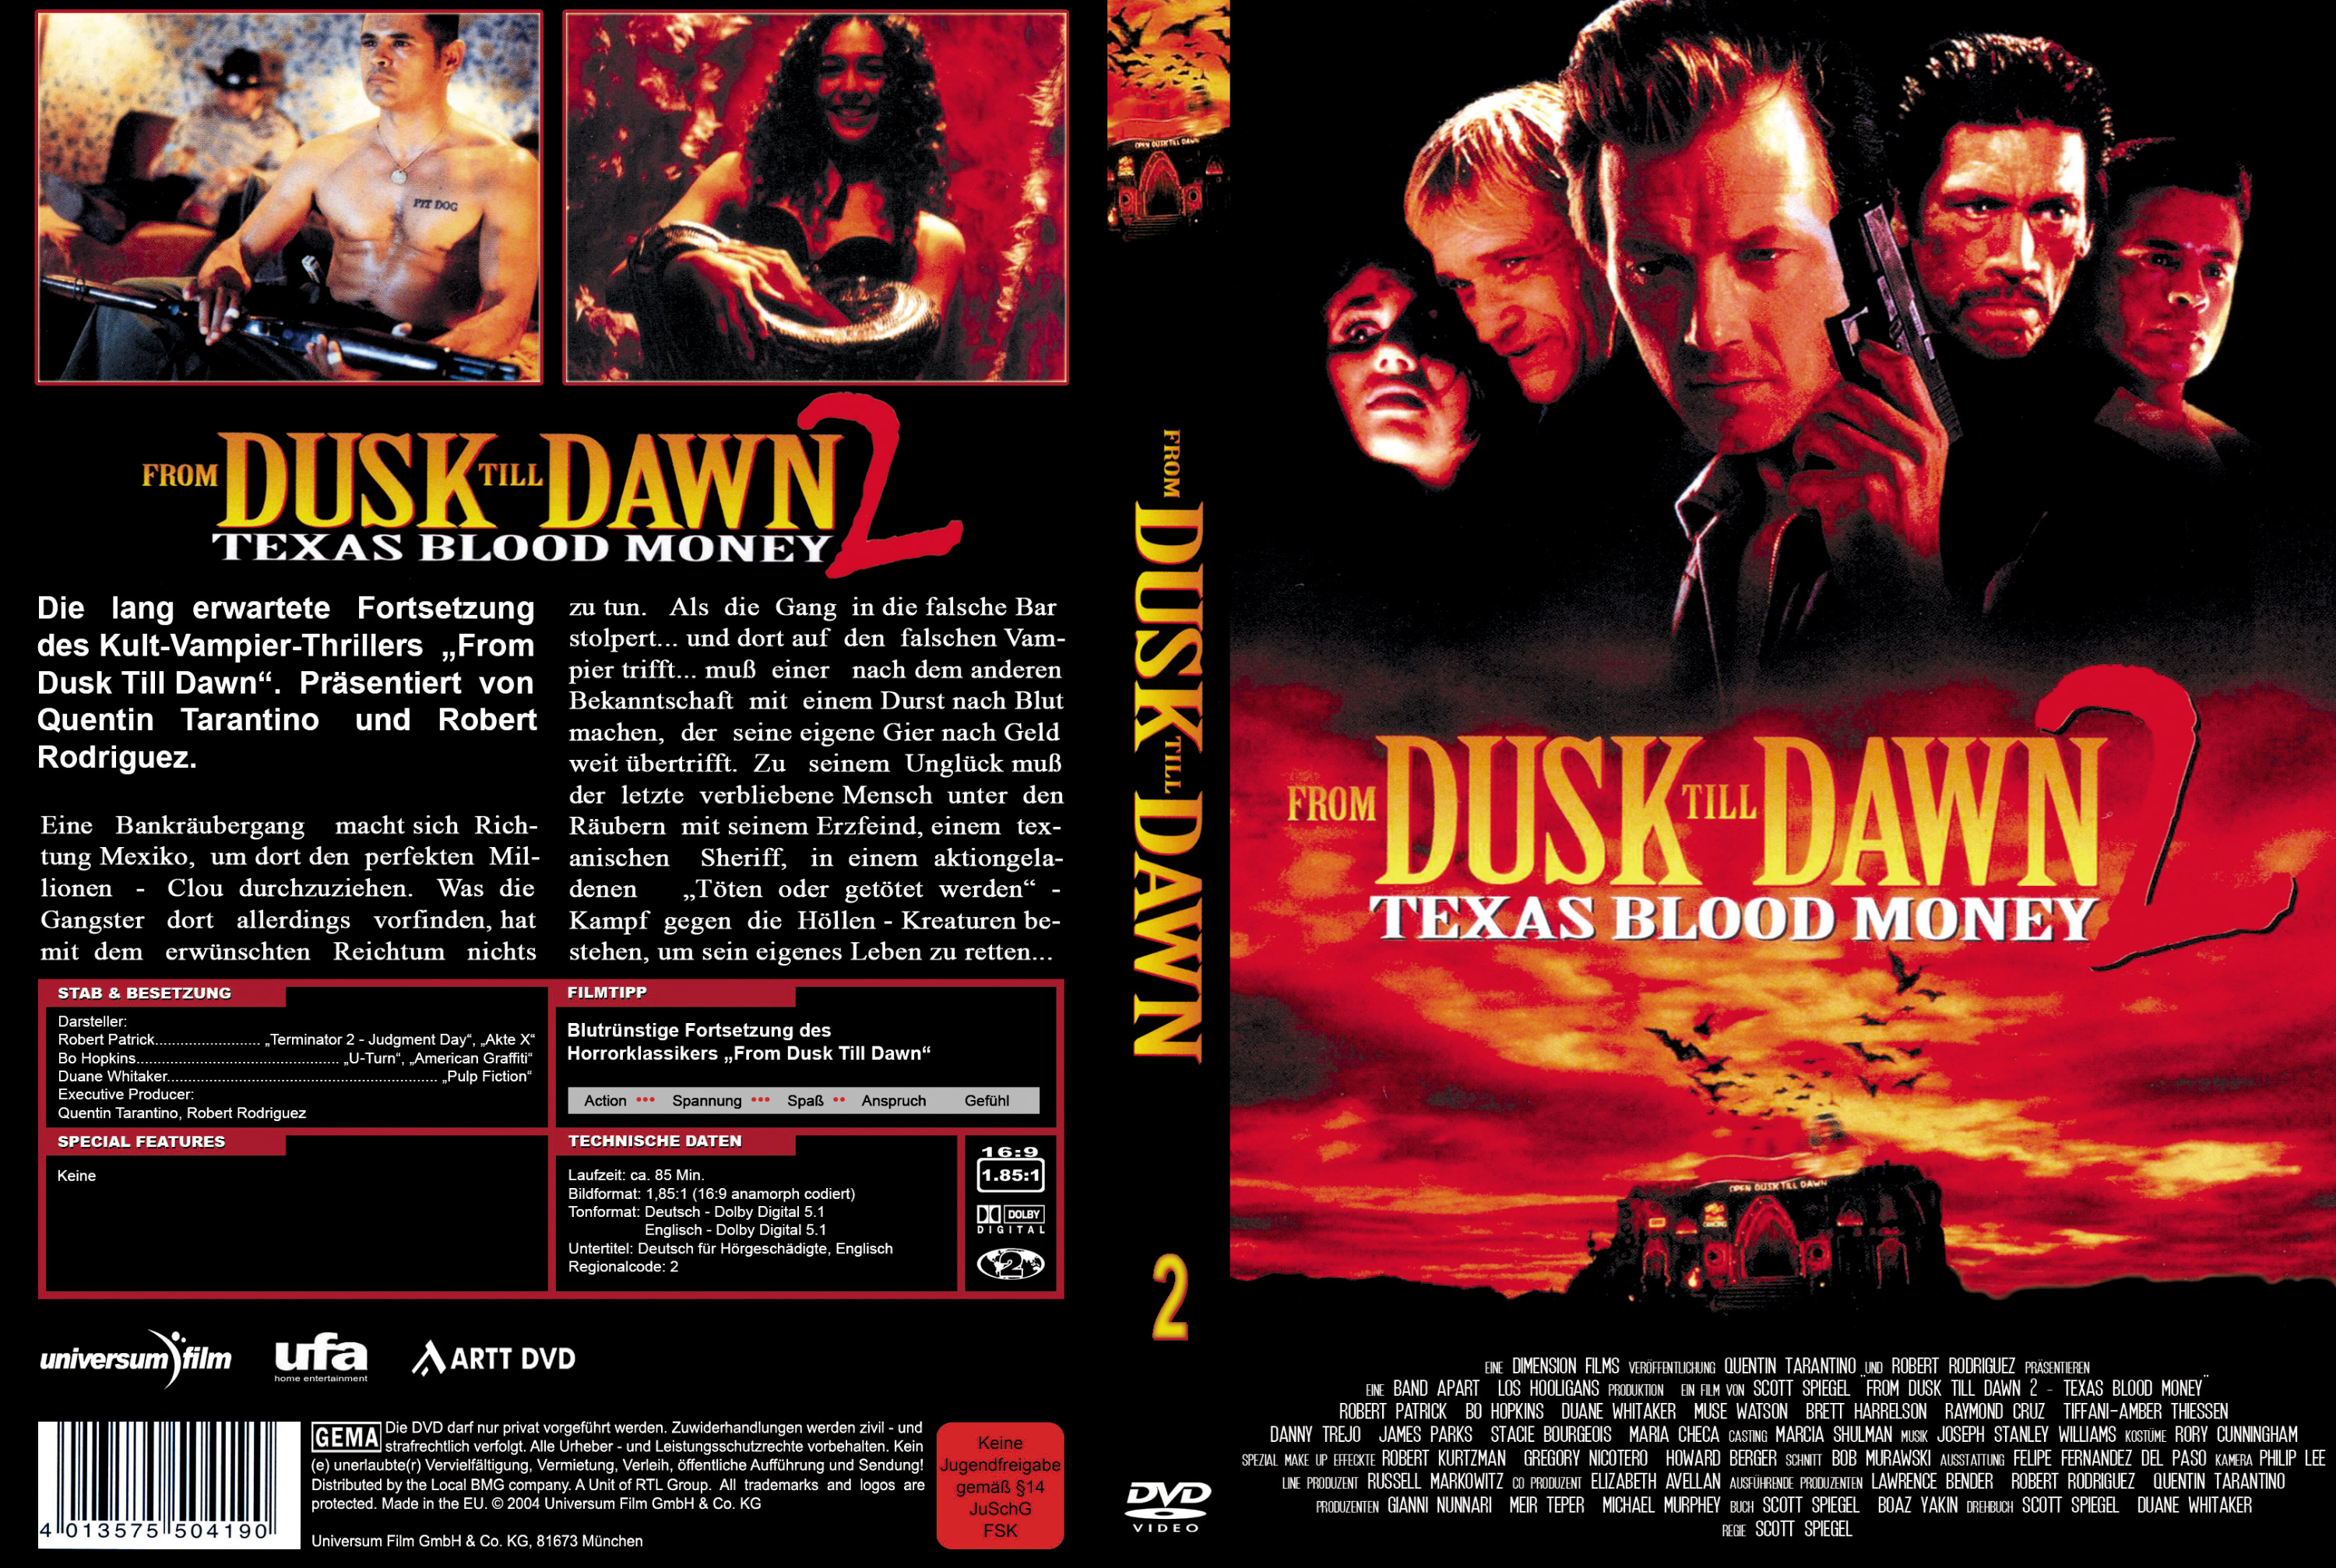 From Dusk Till Dawn 2 Texas Blood Money Free DVD Cover deutsch.